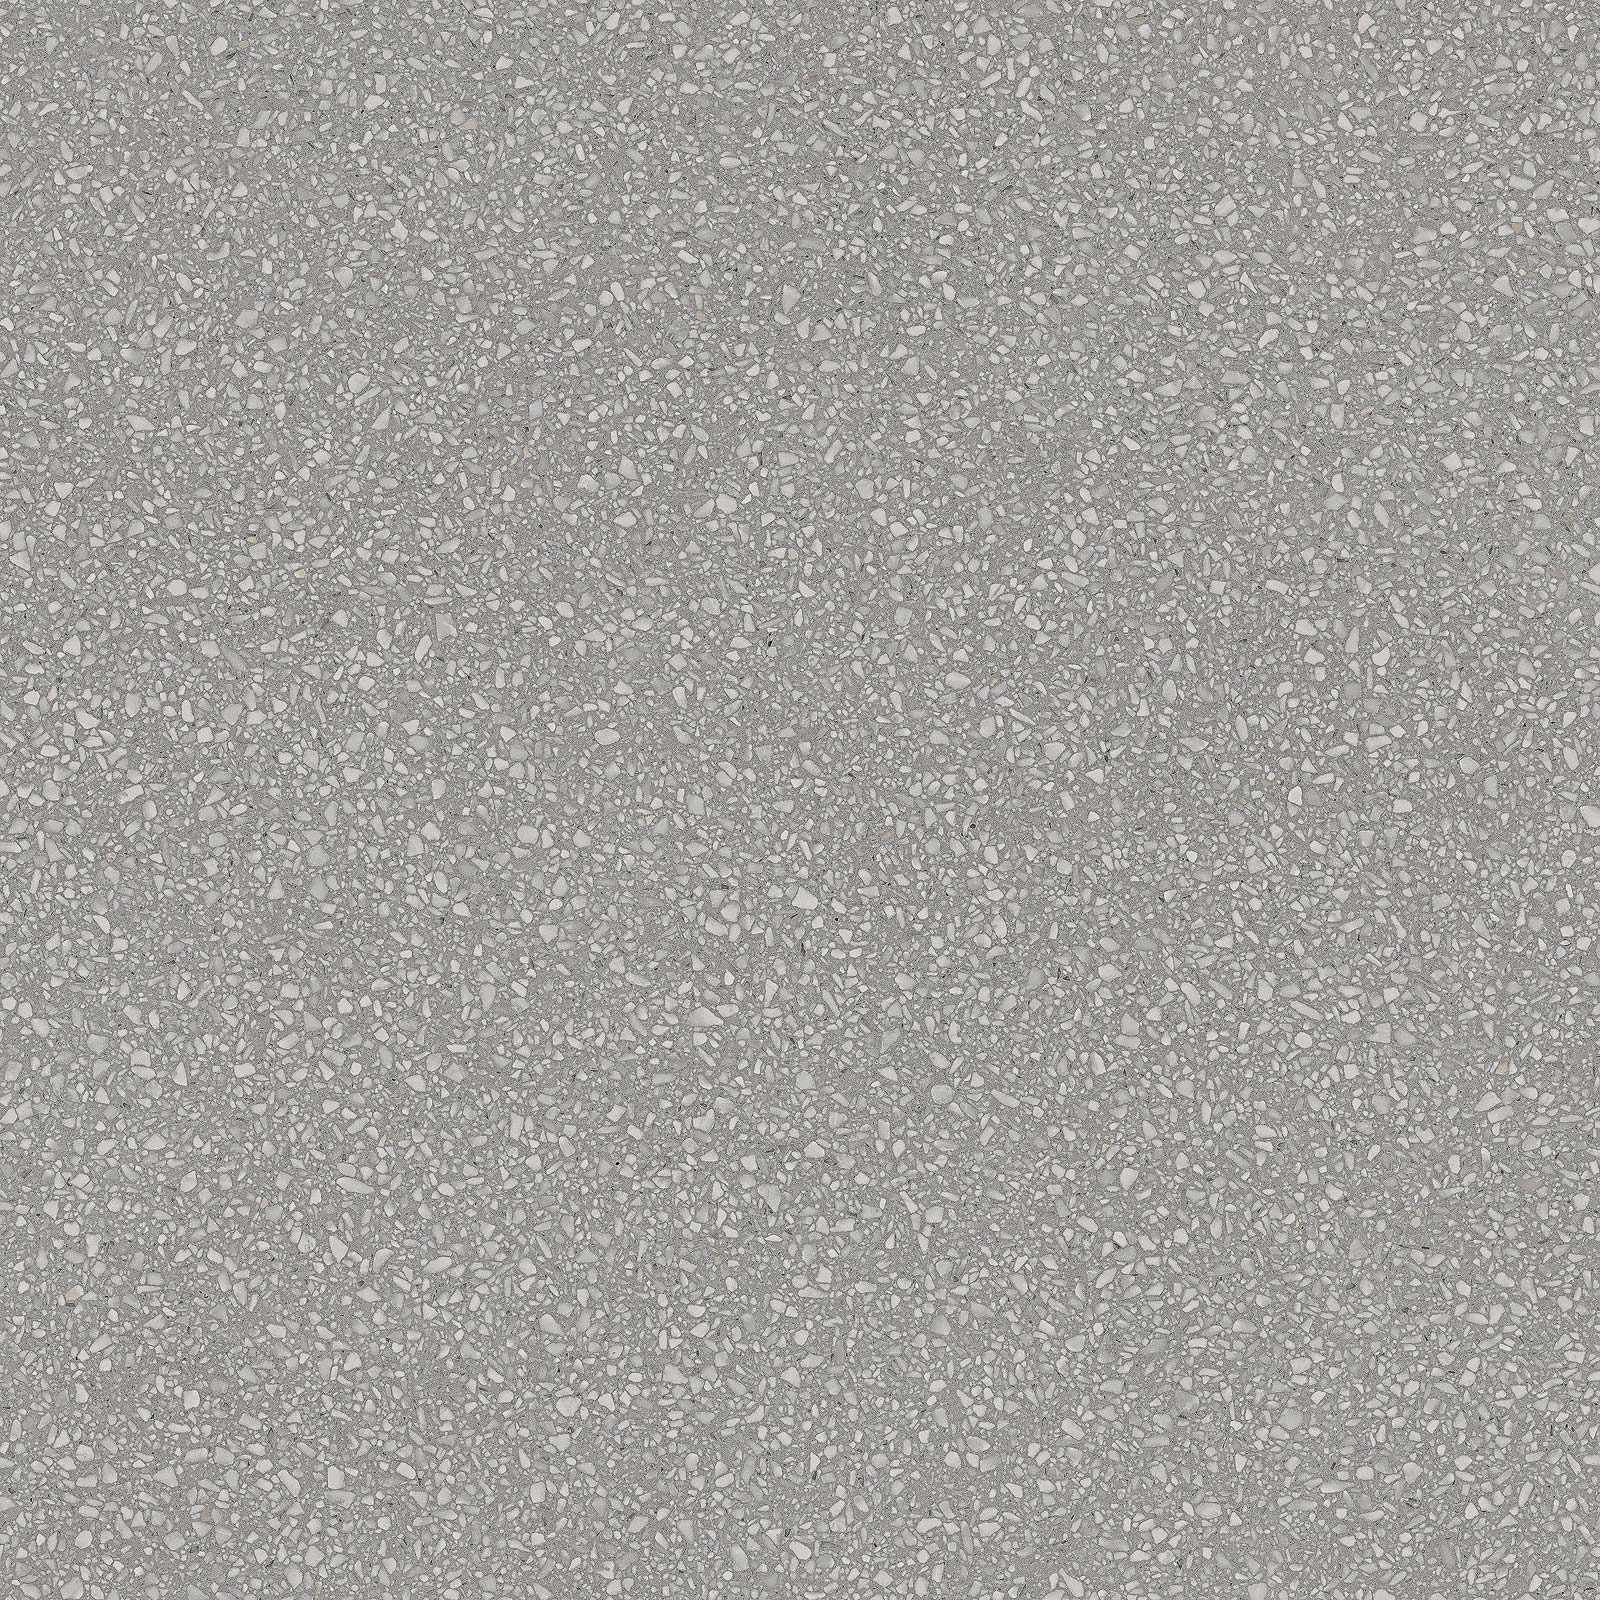 Керамогранит Плитка из керамогранита Marazzi Italy Pinch 60x60 серый (M8E9) / коллекция Marazzi Italy / производитель Marazzi Italy / страна Италия